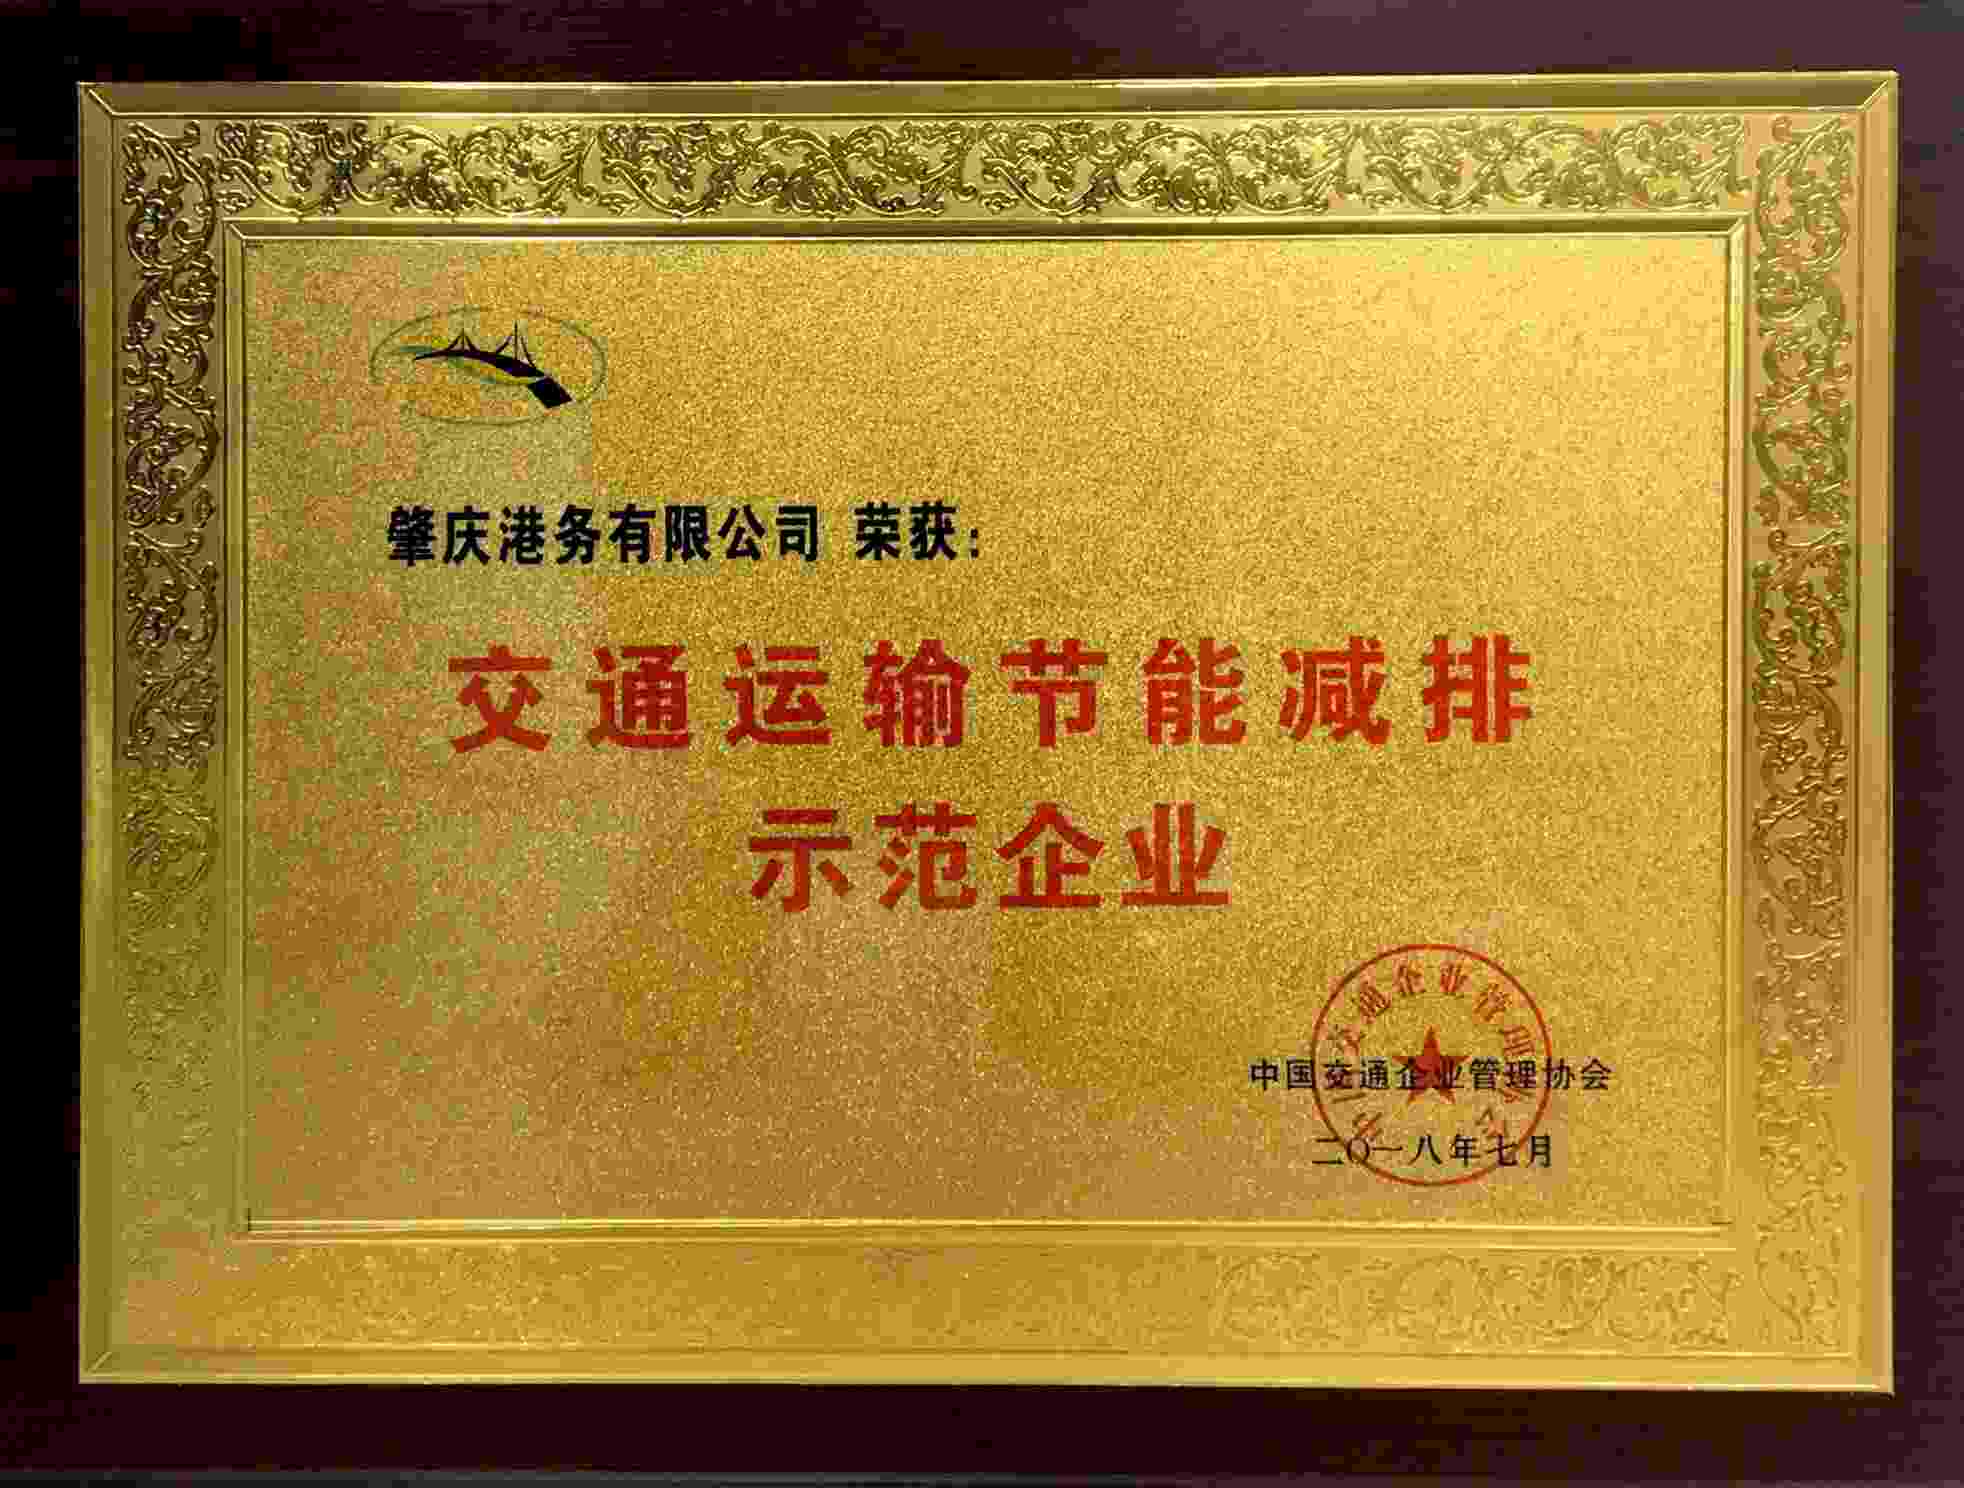 热烈庆祝肇庆港务有限公司获得“交通运输节能减排示范企业”等荣誉称号